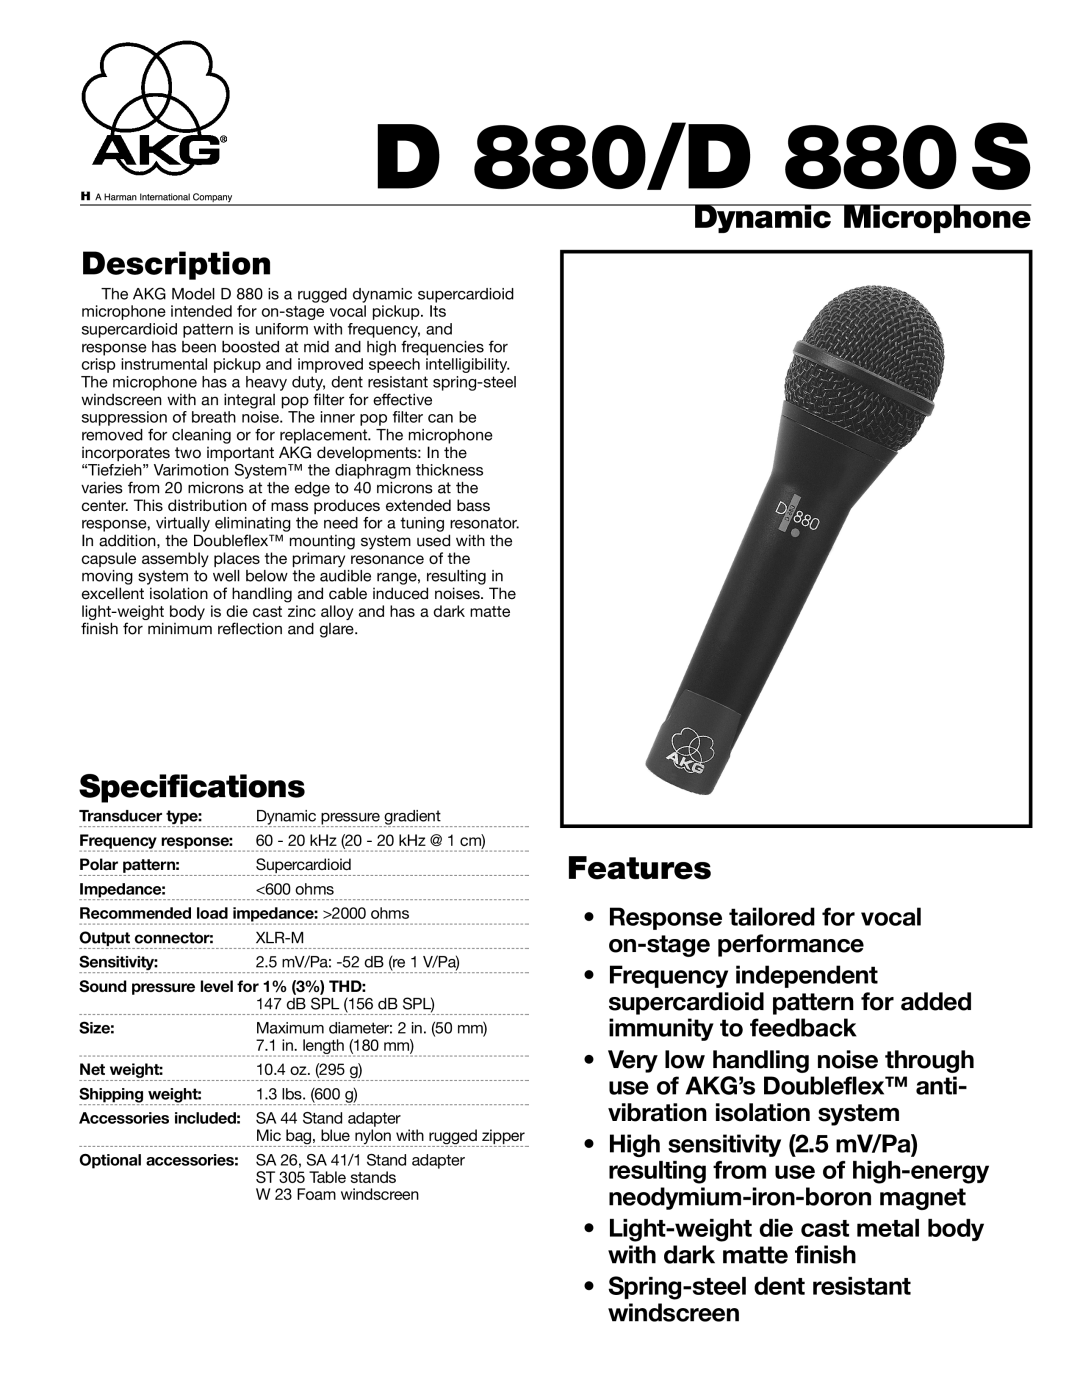 AKG Acoustics specifications Dynamic Microphone Description, Specifications, Features, D 880/D 880S 